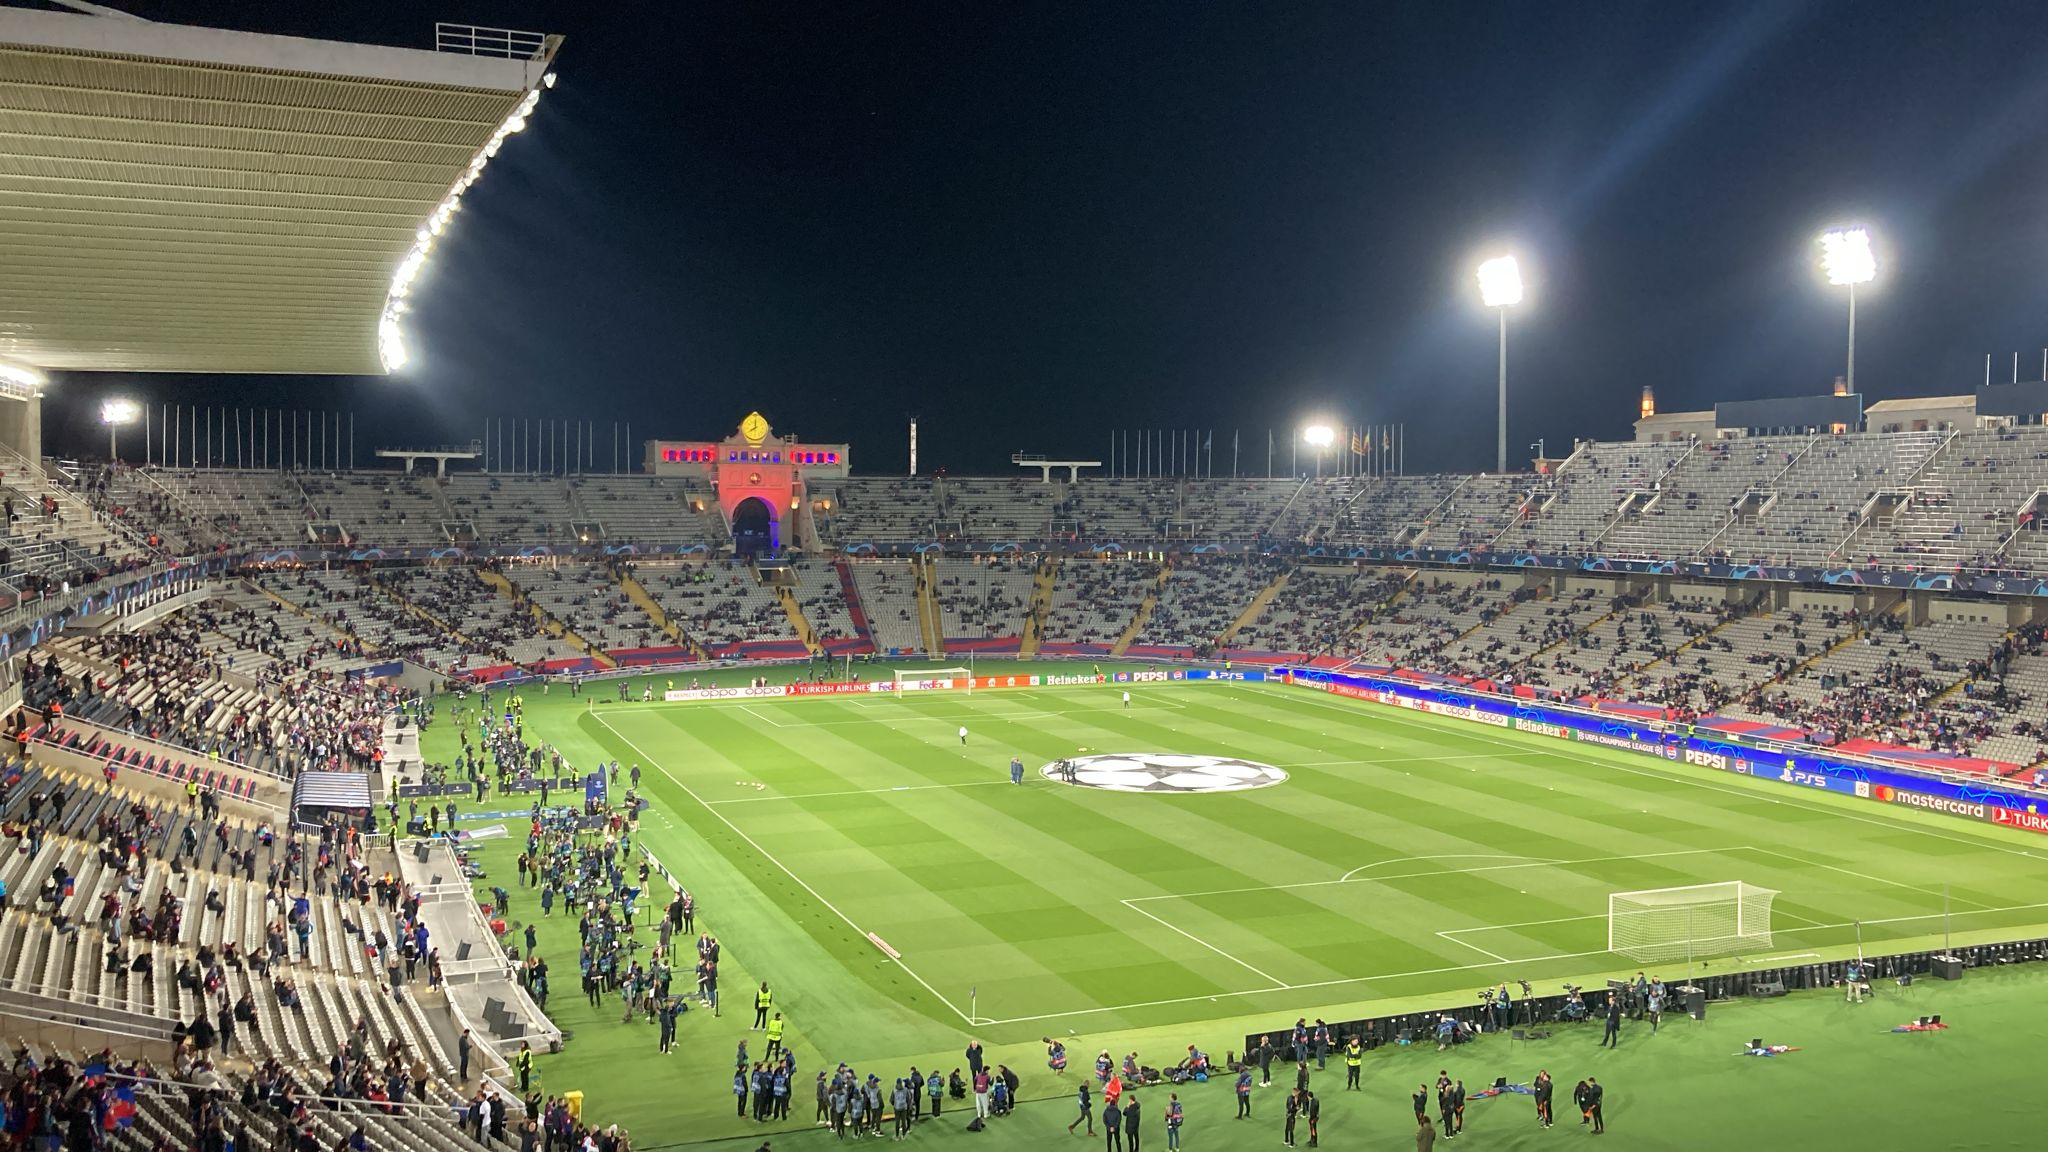 LIVE | Barcellona-Napoli 0-0, in diretta dallo stadio Olimpico di Montjuic